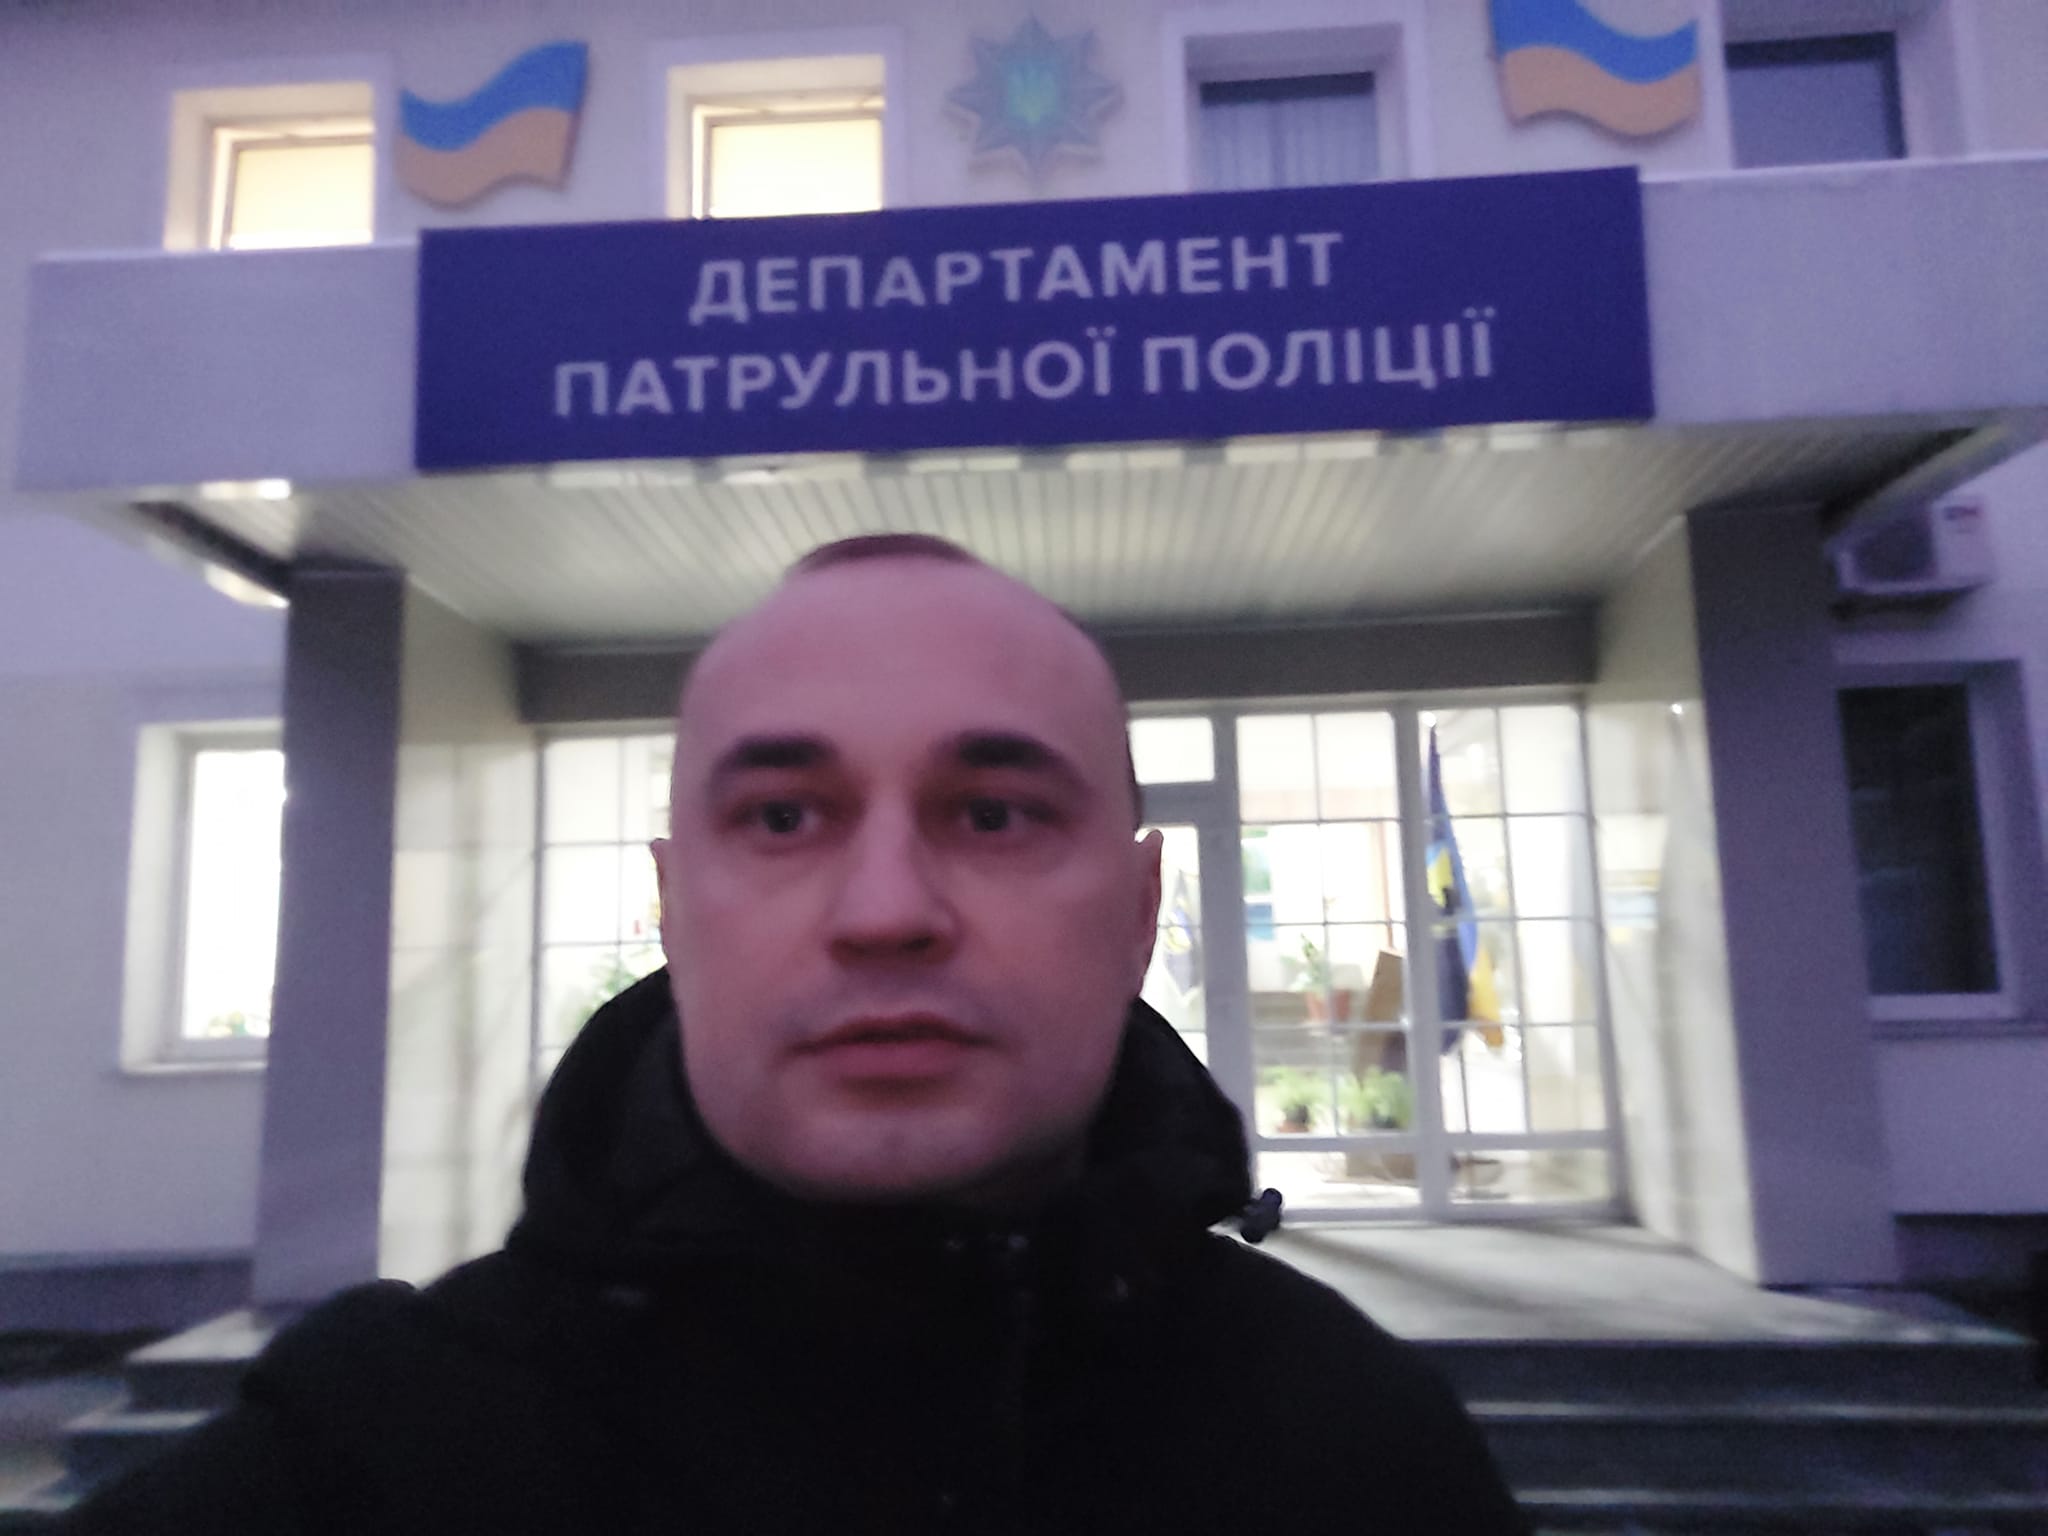 Про складення повноважень очільником Управління патрульної поліції в Закарпатської області стало відомо сьогодні, 1 лютого